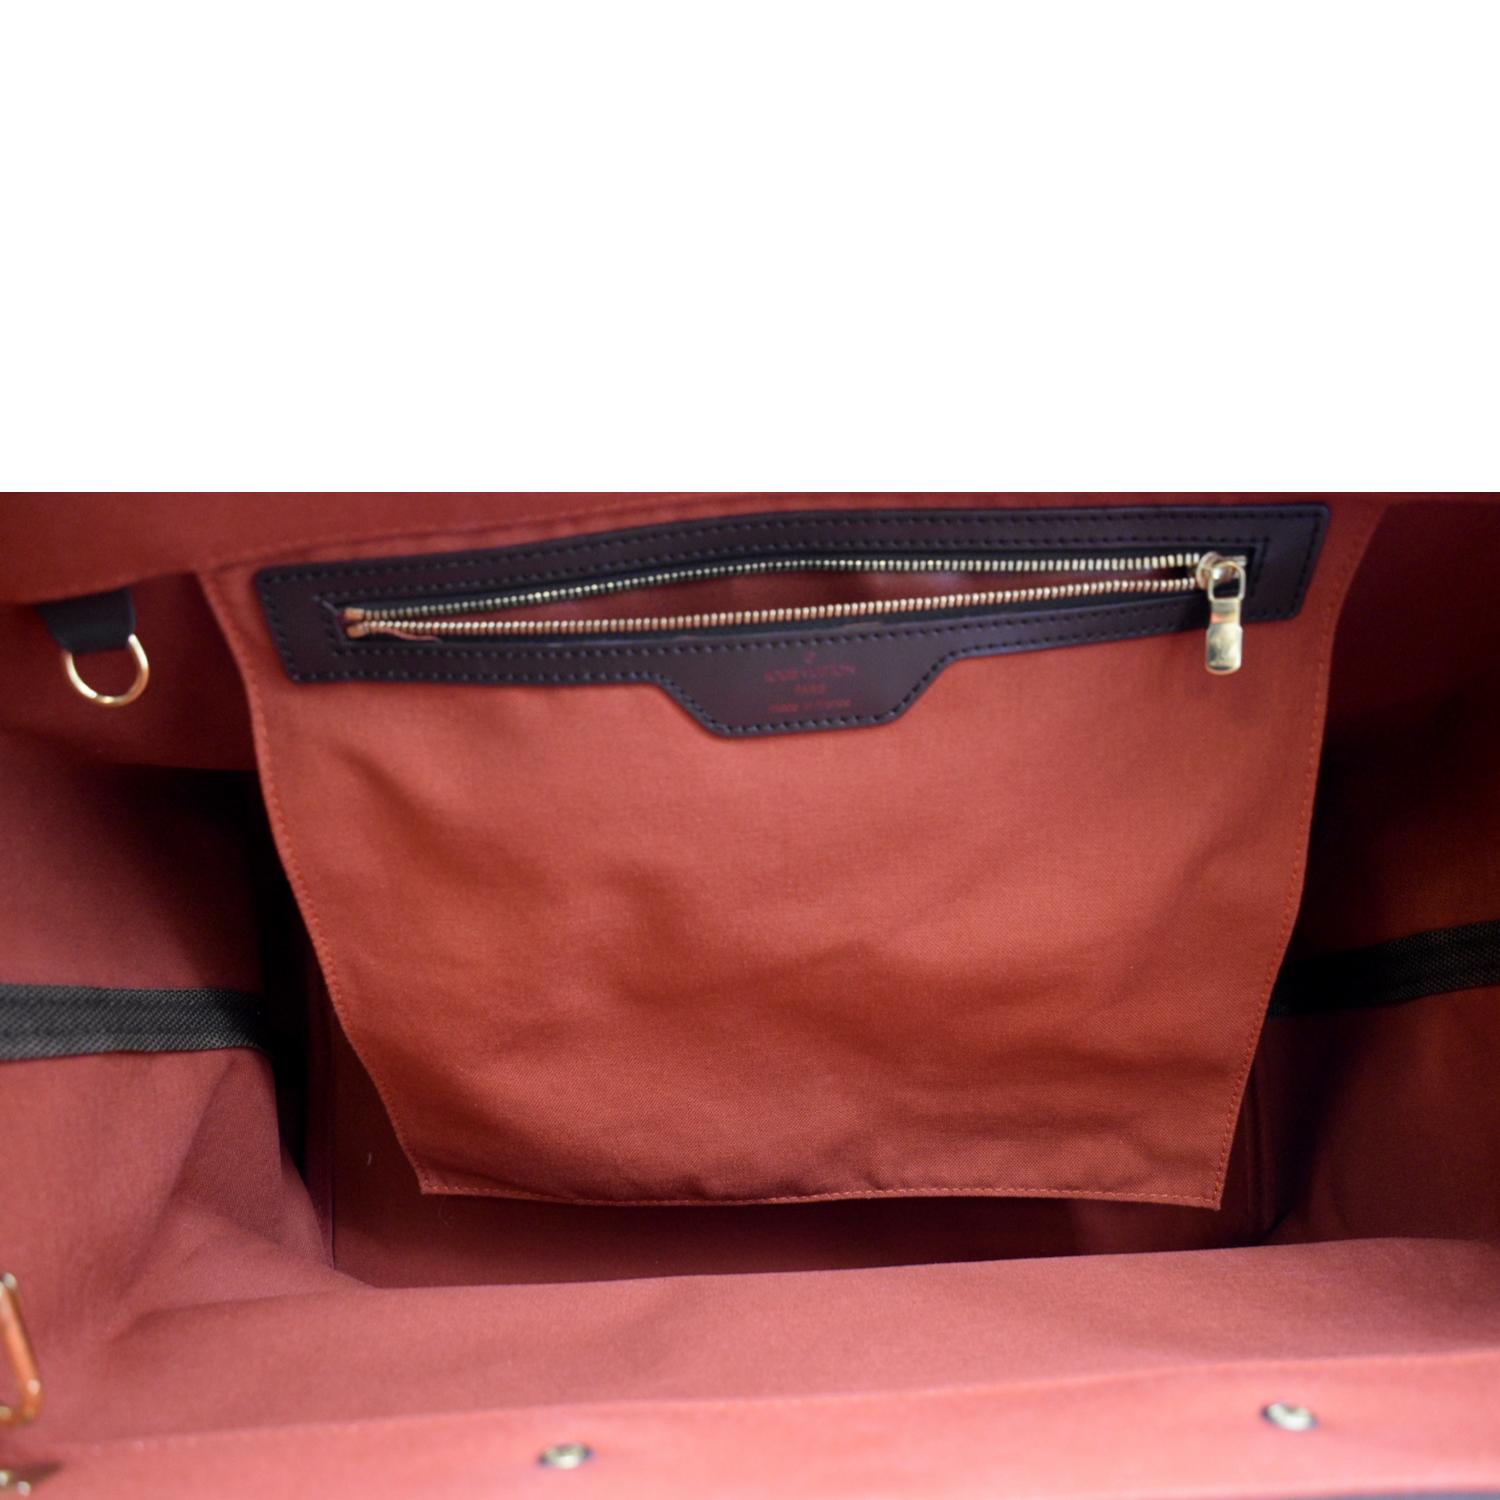 Louis Vuitton Greenwich PM - ShopStyle Shoulder Bags